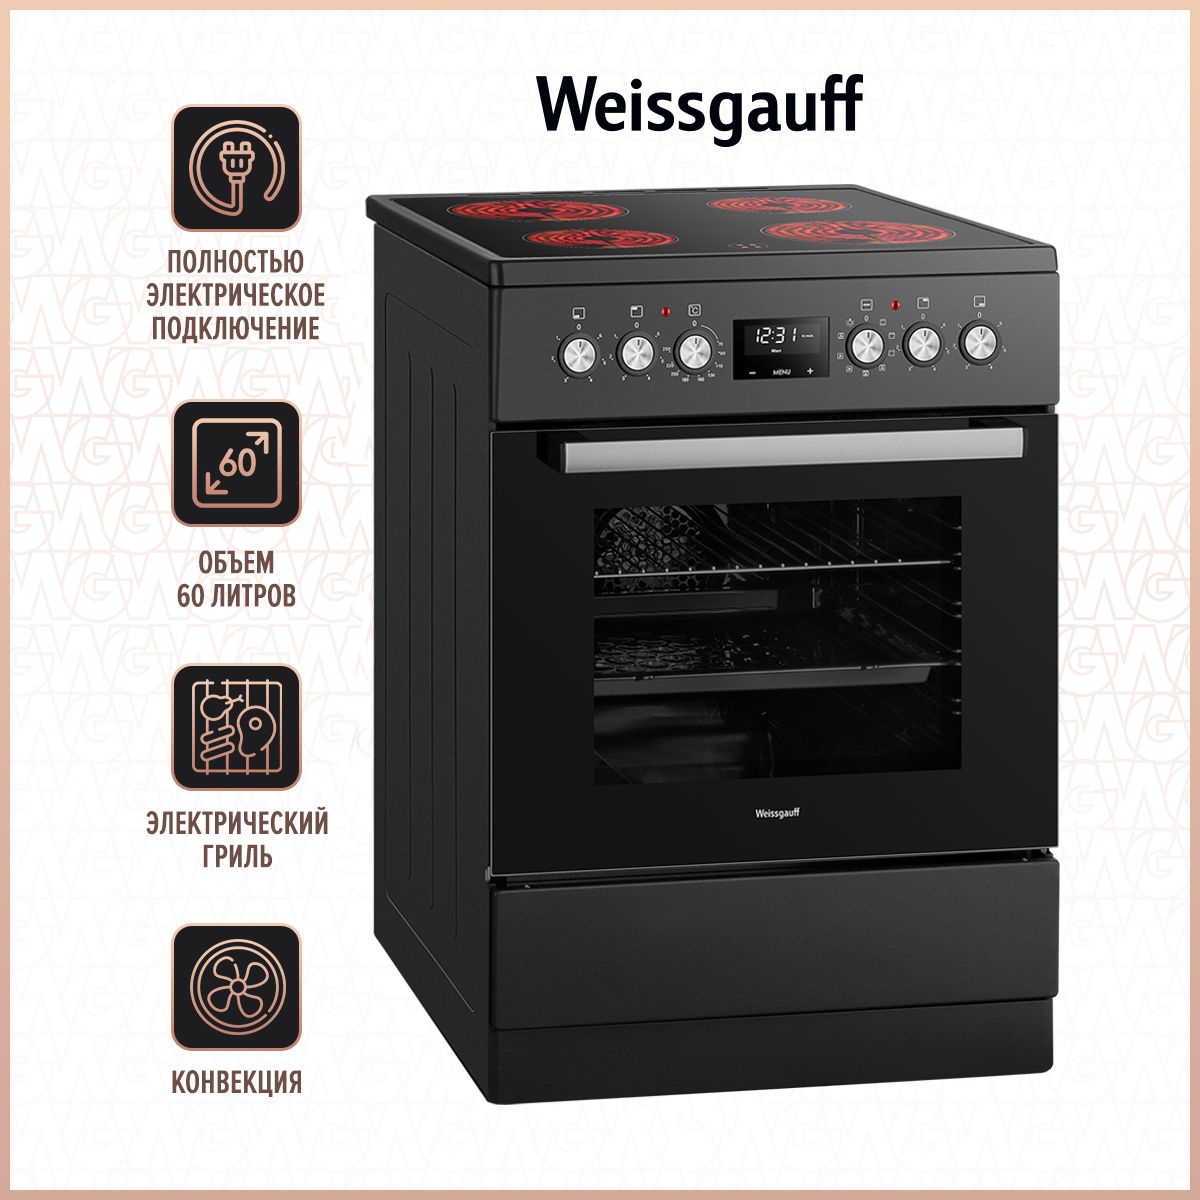 Электрическая плита Weissgauff WES E12V15 черный электрическая плита weissgauff wes 2v16 be серебристый